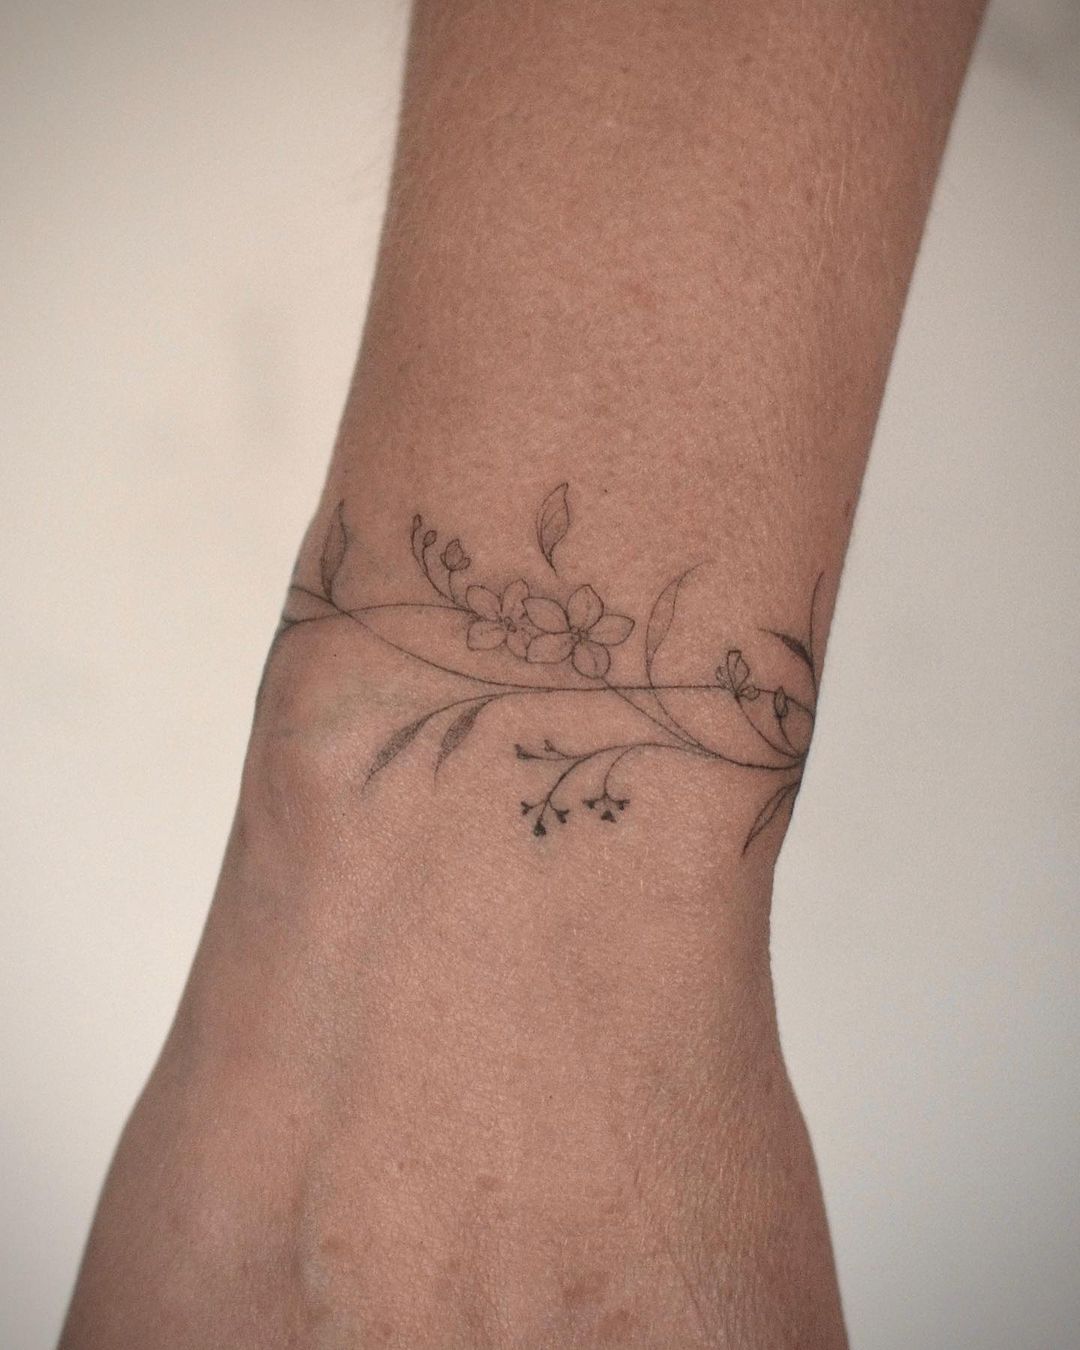 Flower bracelet tattoo on the right upper arm